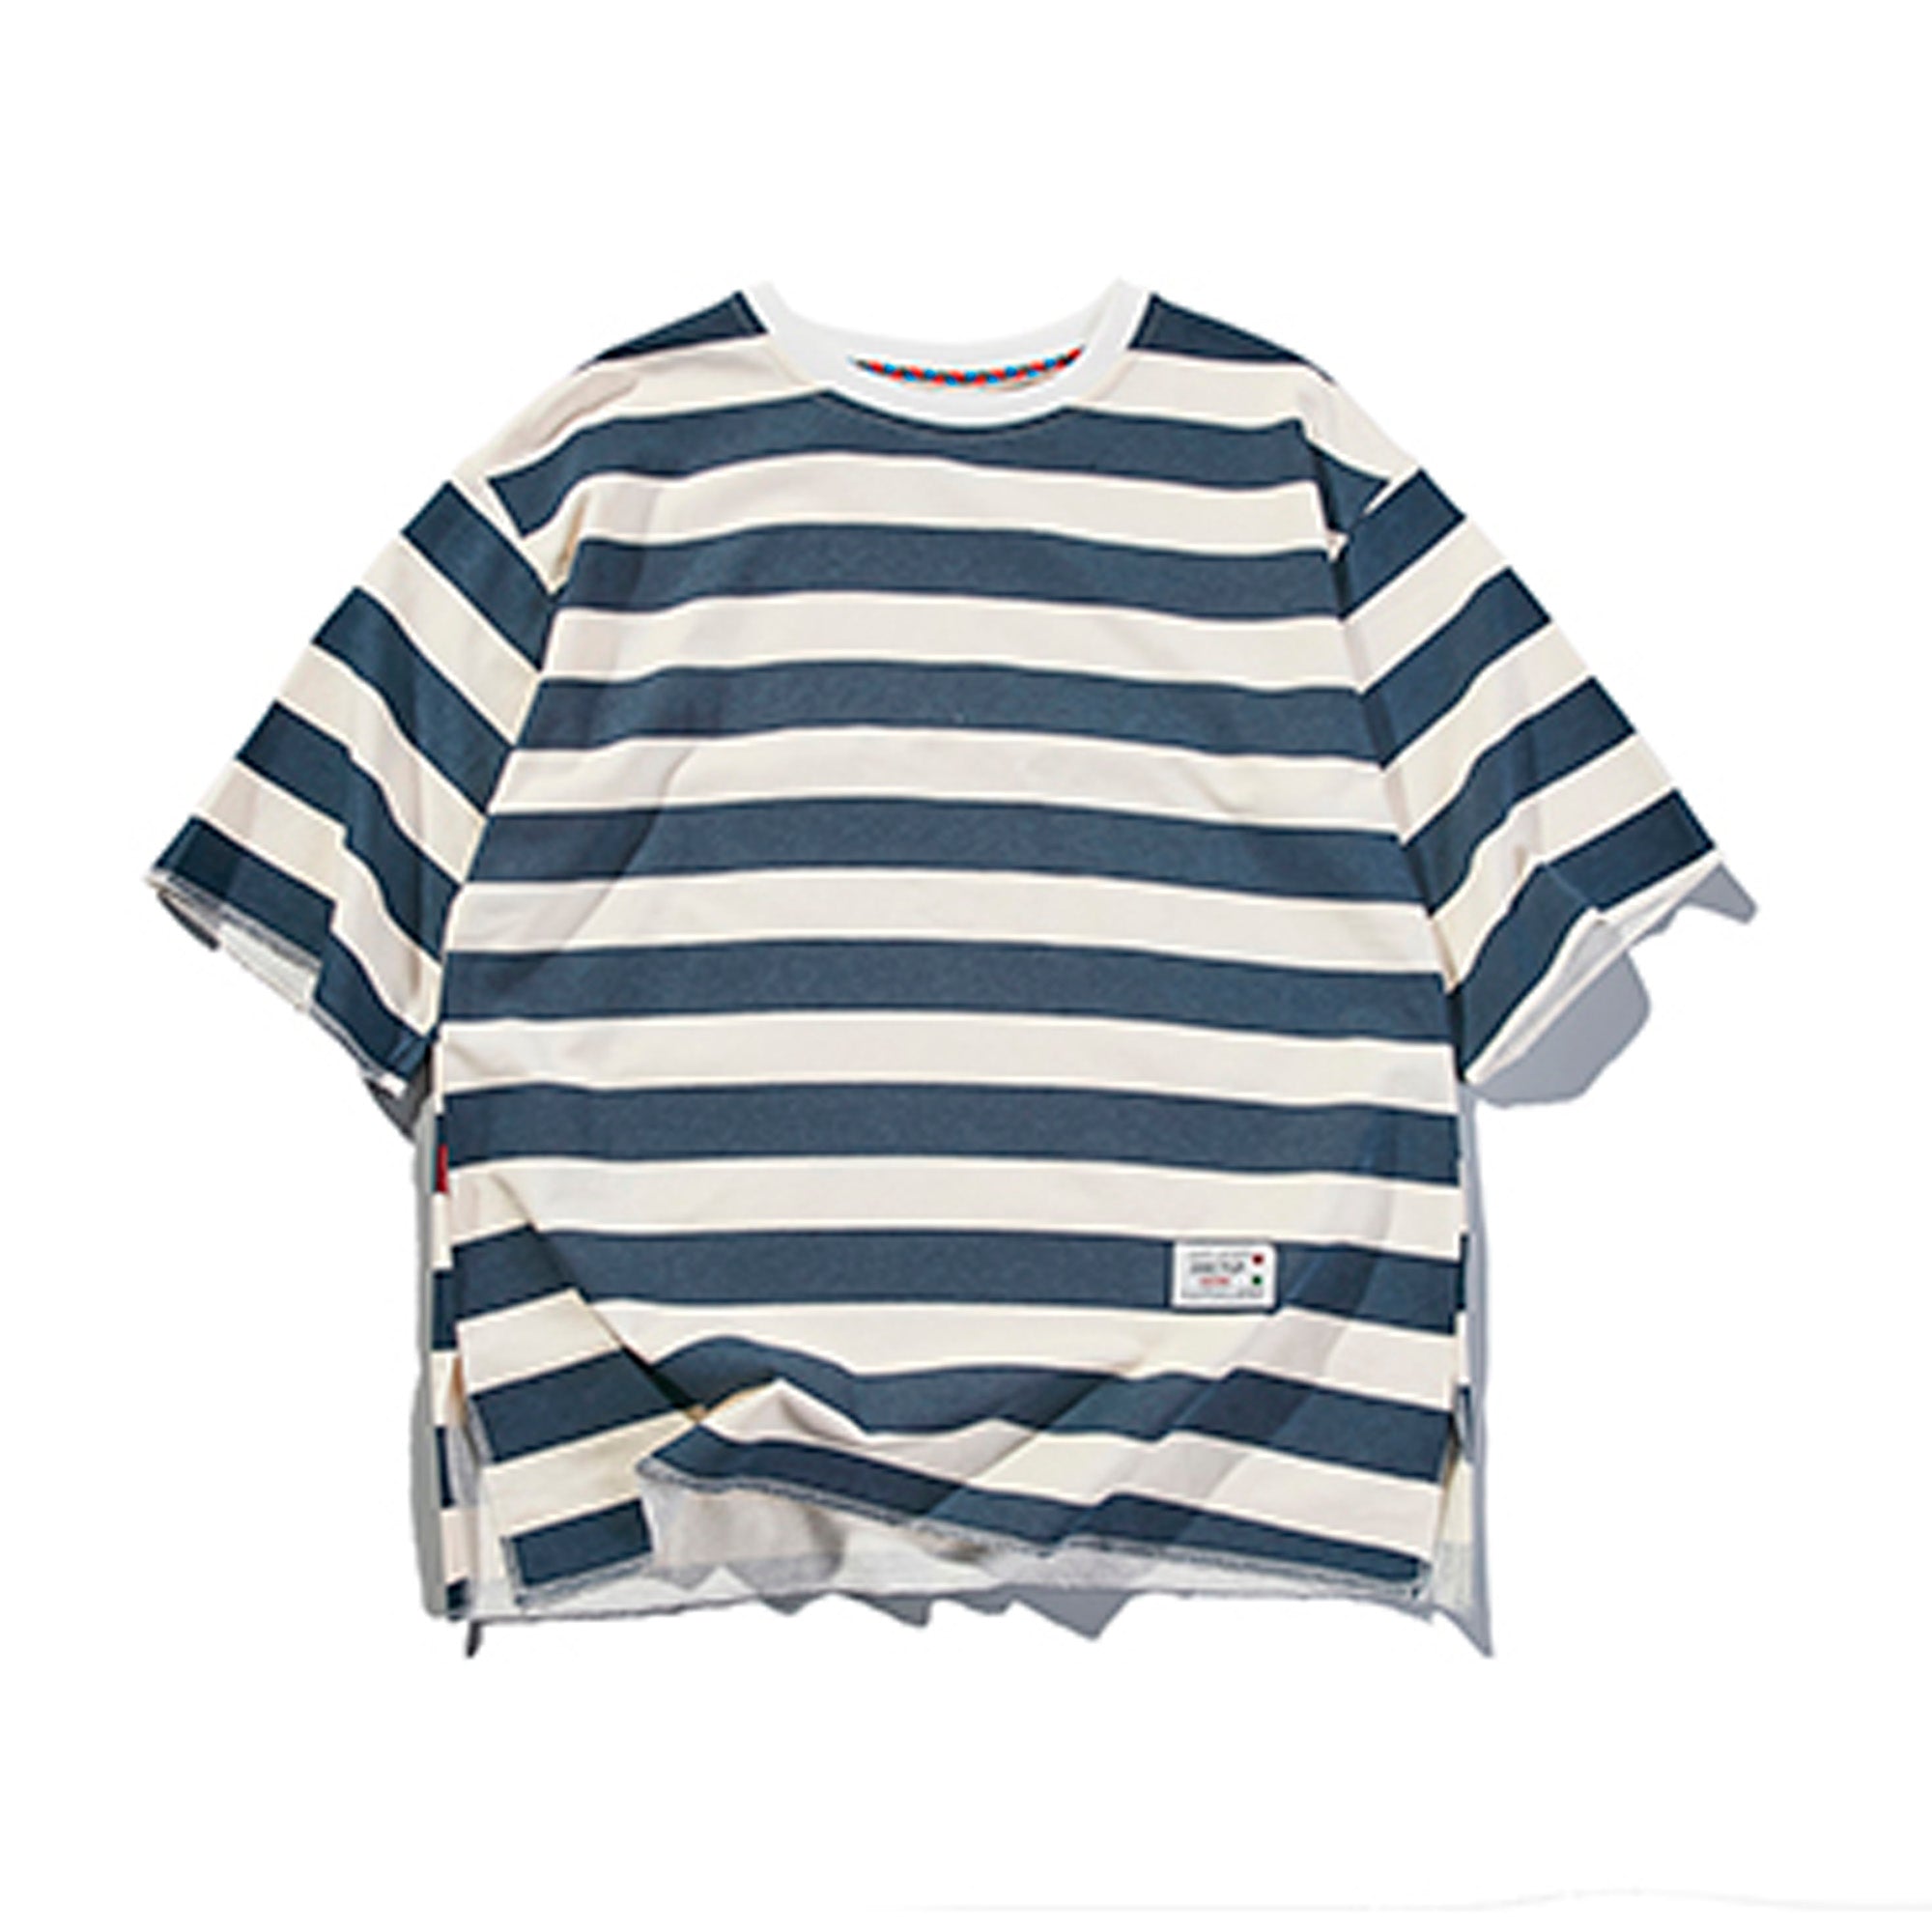 retro horizontal striped T-shirt